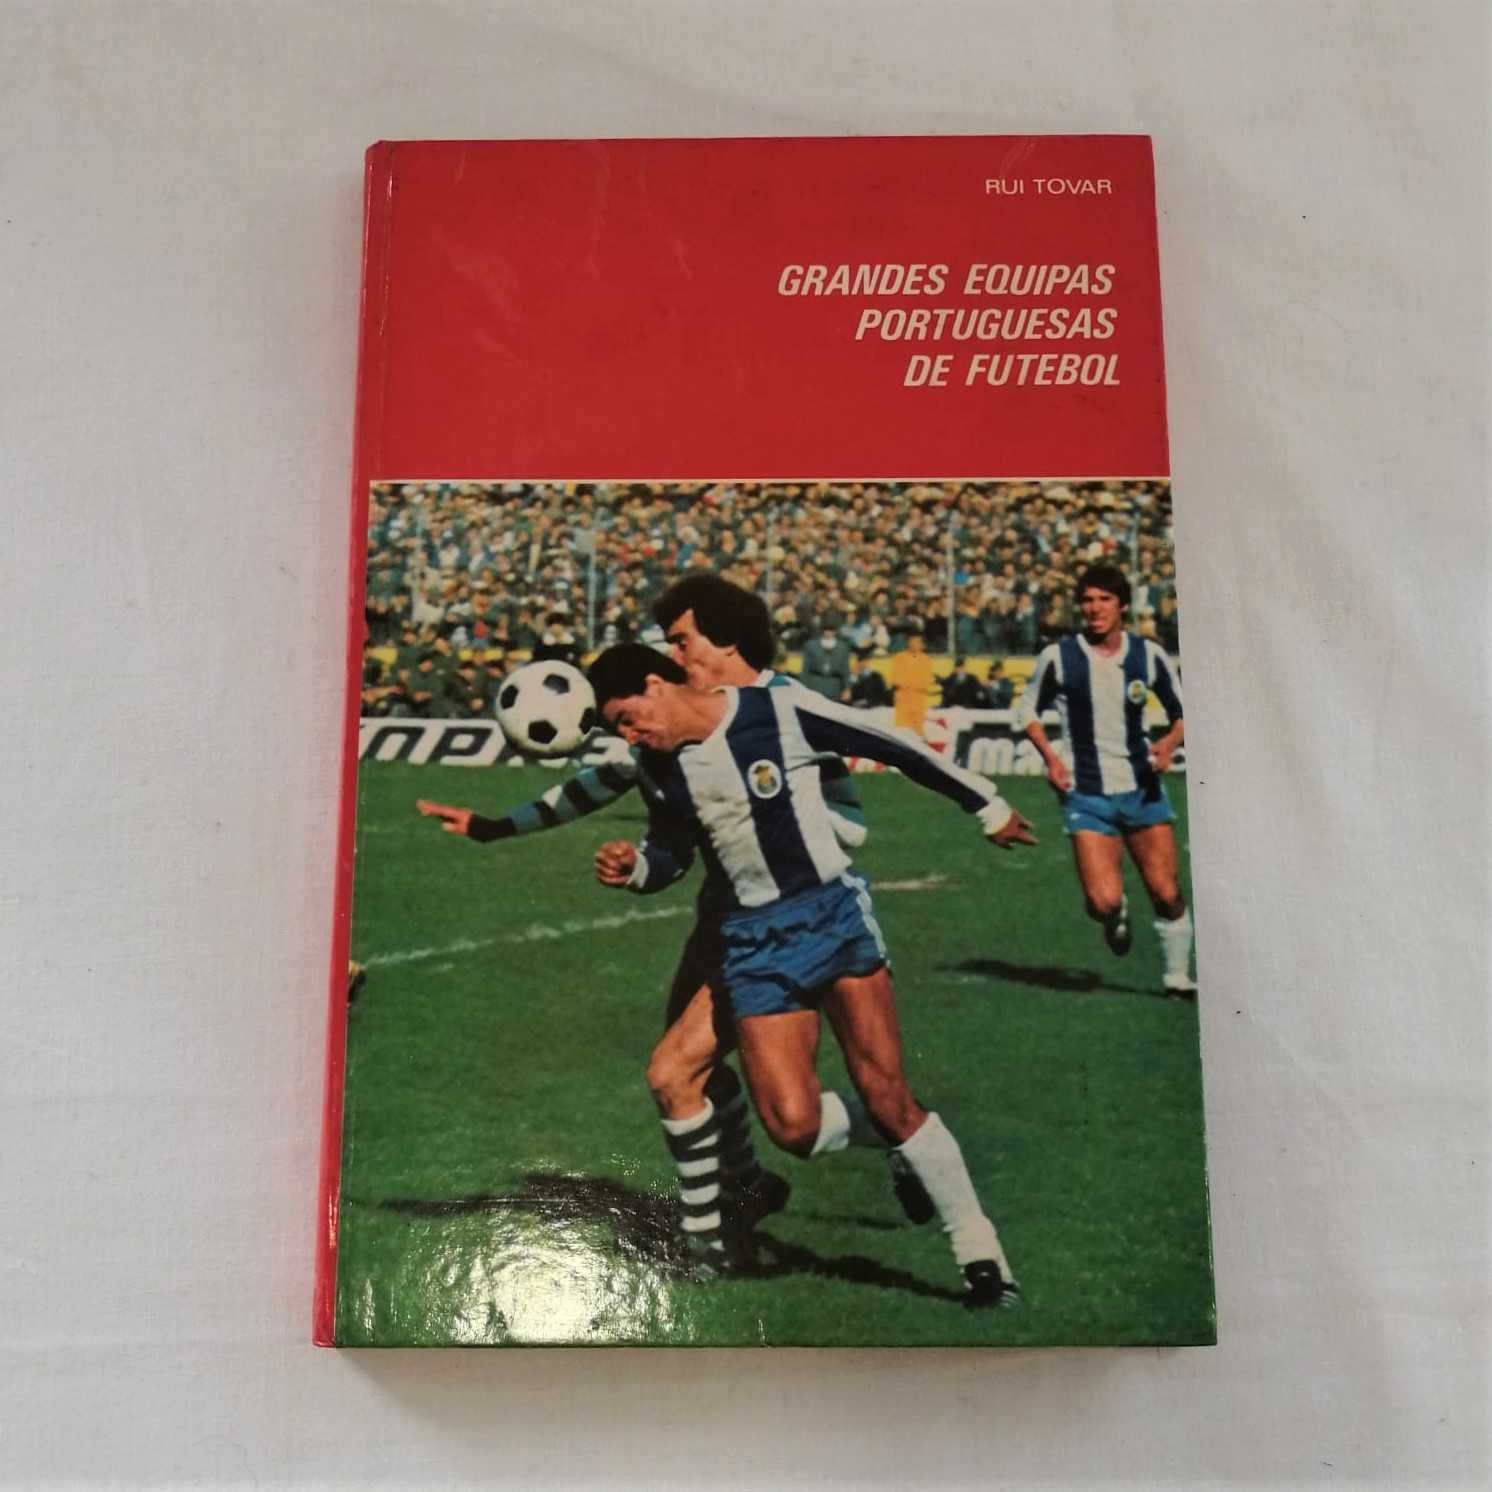 4 Livros "Grandes Equipas Portuguesas de Futebol" Rui Tovar